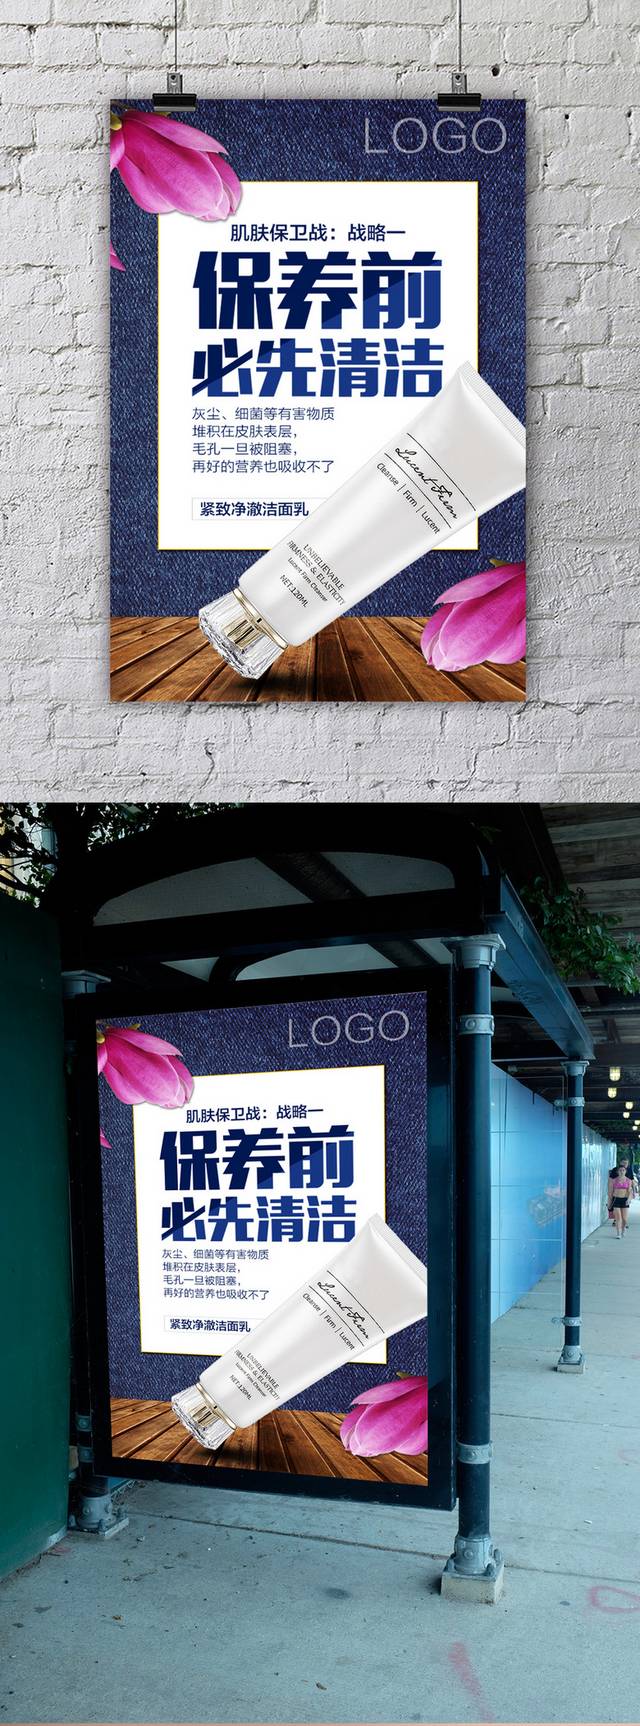 品牌化妆品店宣传海报